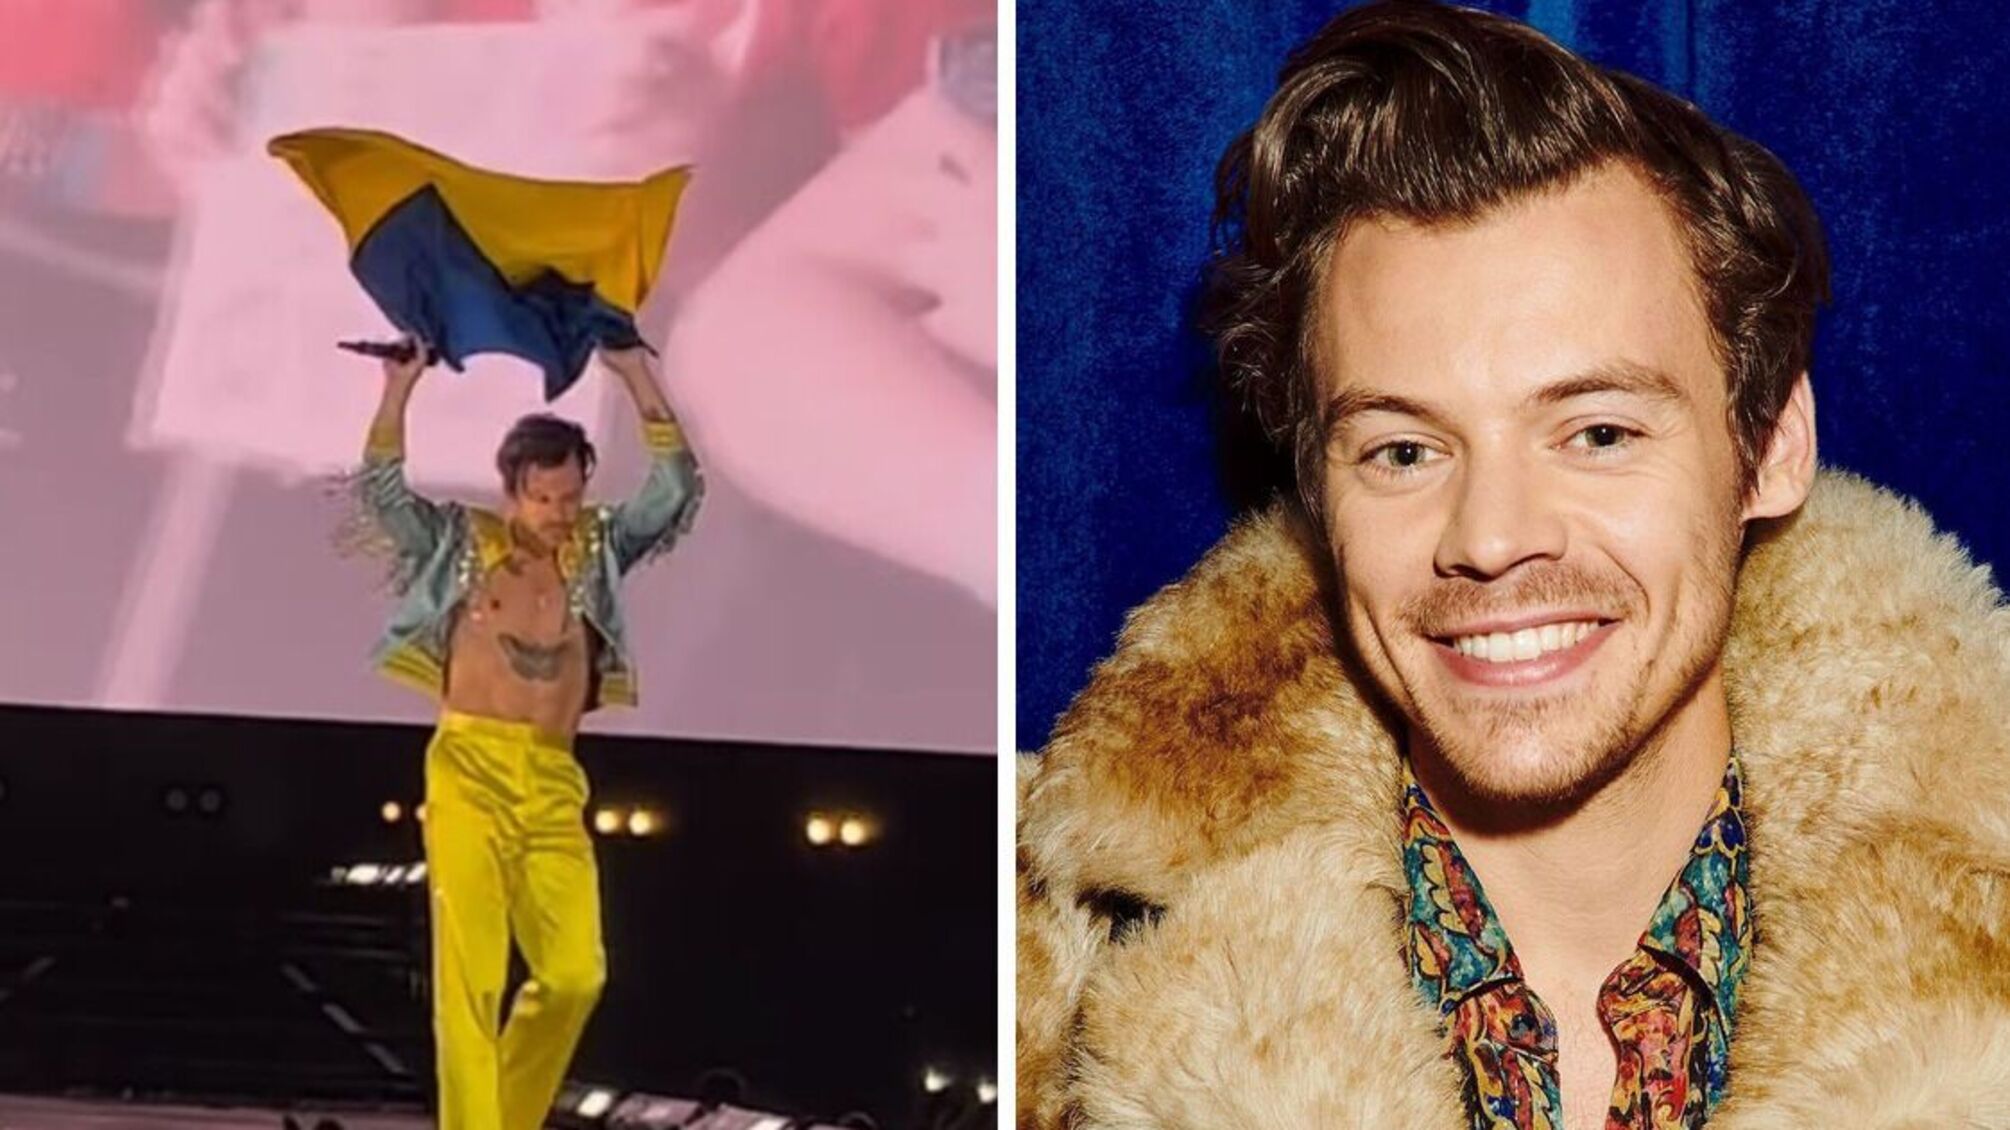 Гарри Стайлз из группы 'One Direction' поднял украинский флаг на концерте в Варшаве